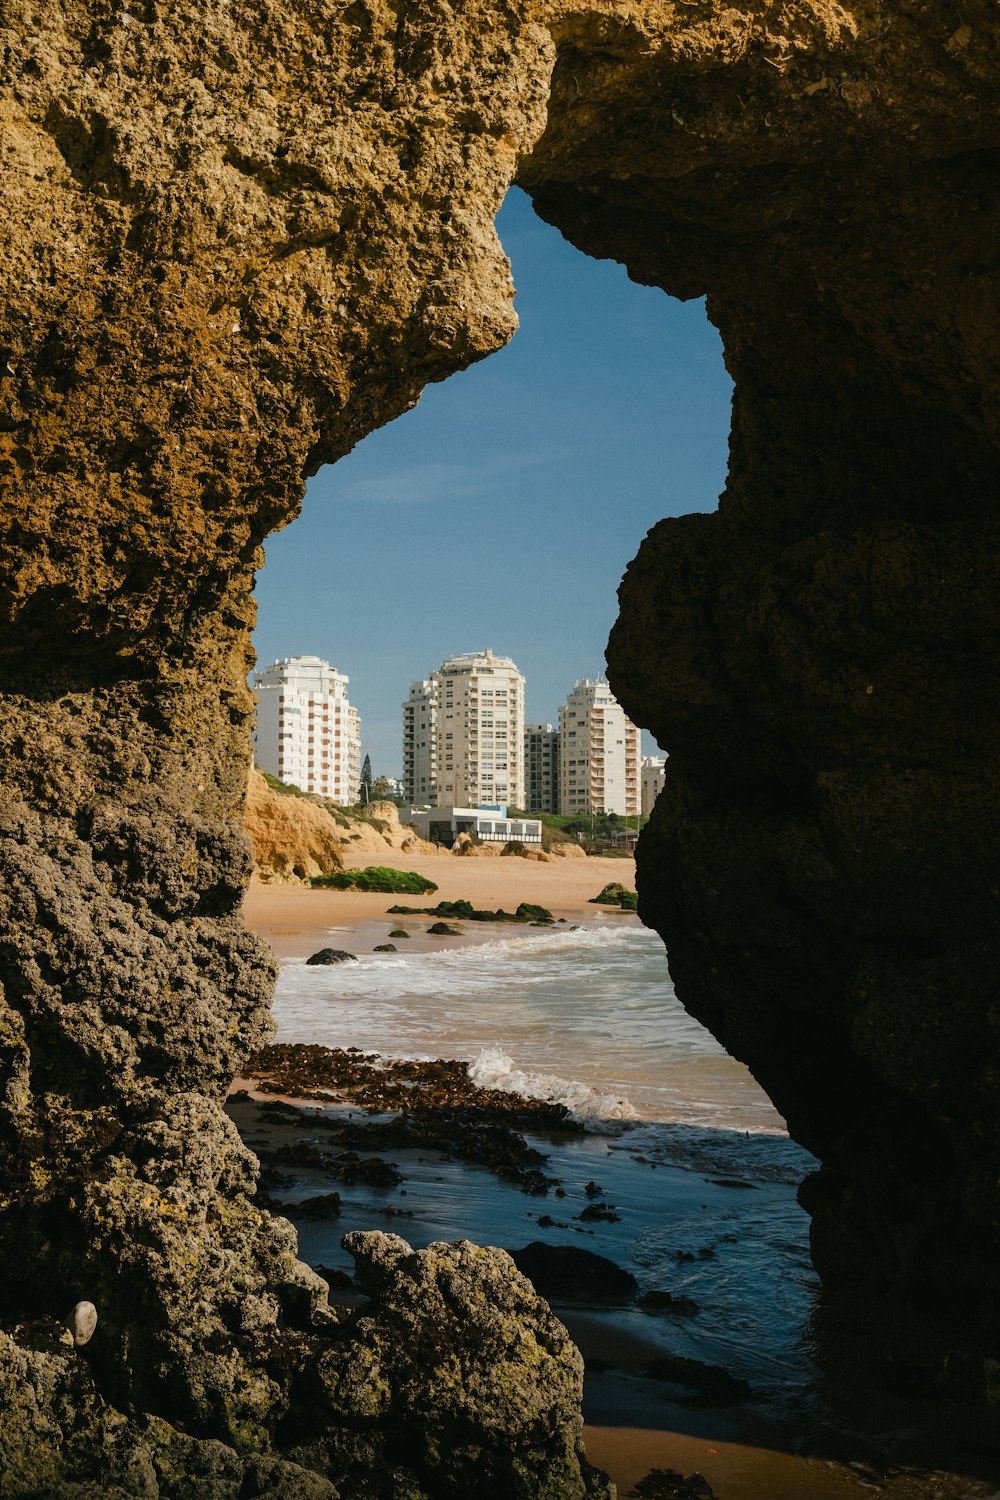 Una vista de una playa a través de un agujero en una roca